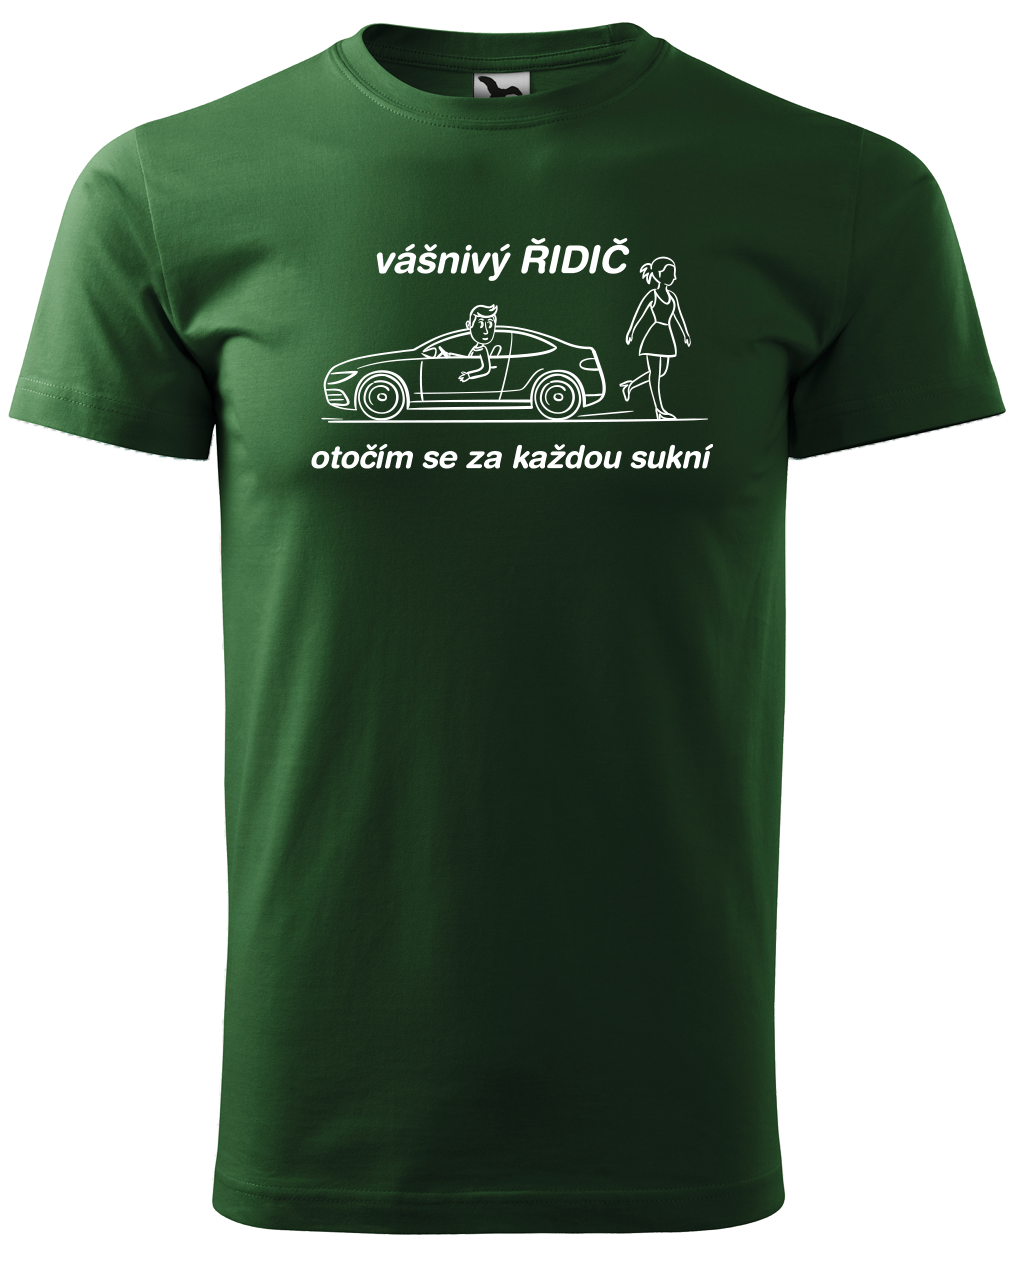 Vtipné tričko pro řidiče - Vášnivý řidič Velikost: S, Barva: Lahvově zelená (06)